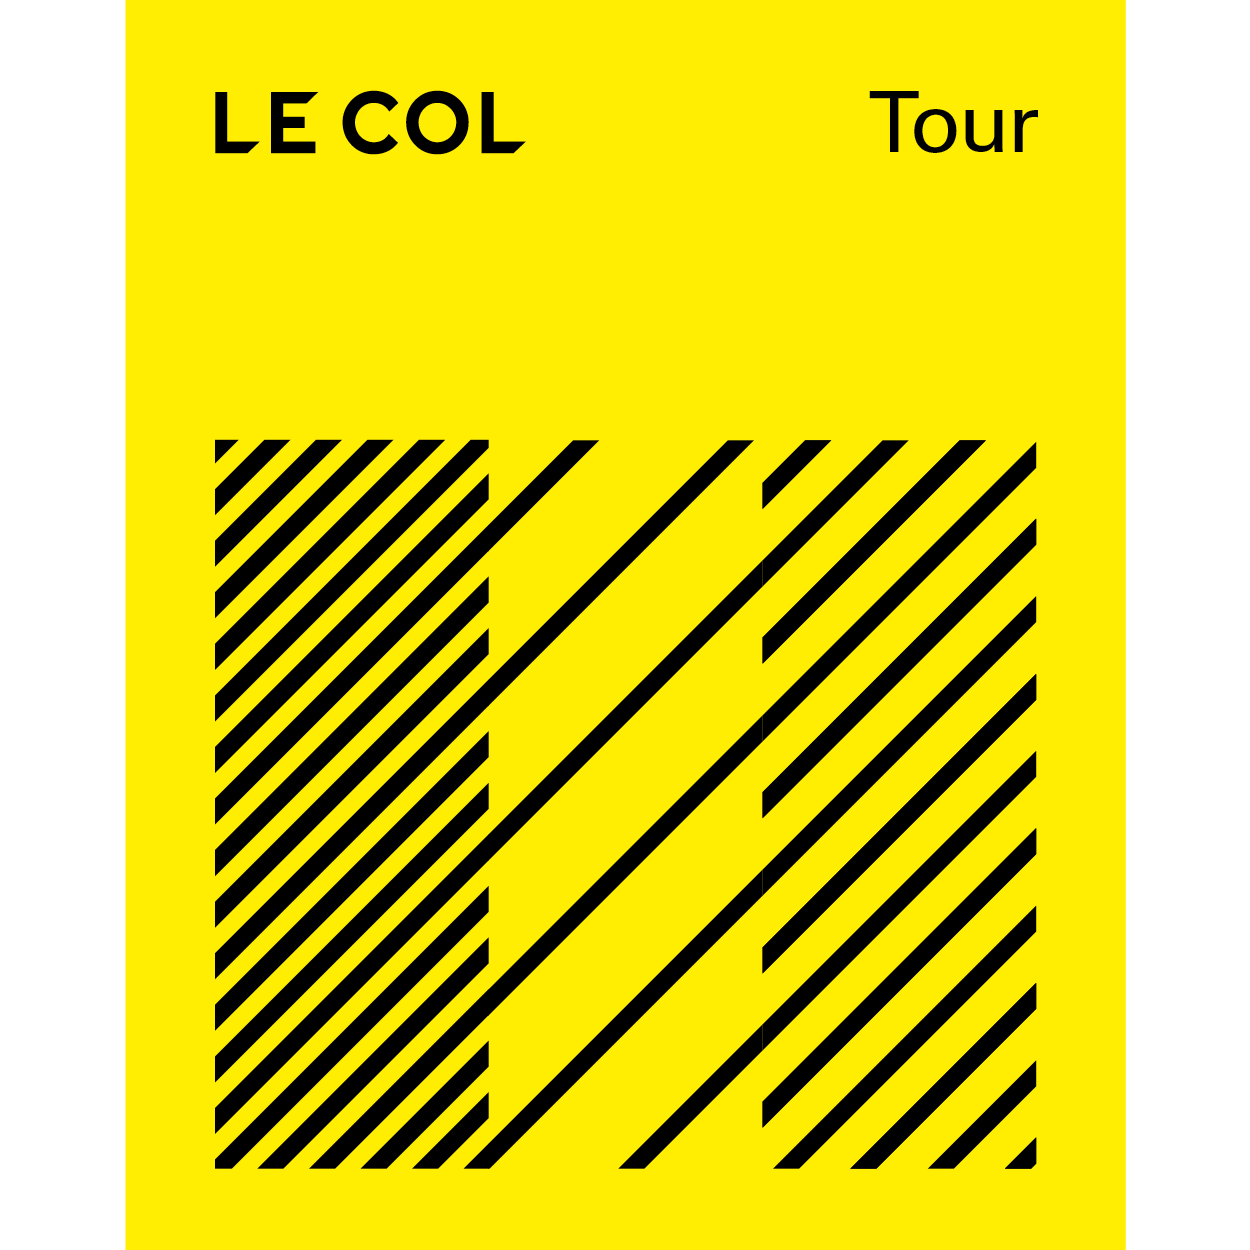 The Le Col Tour Challenge